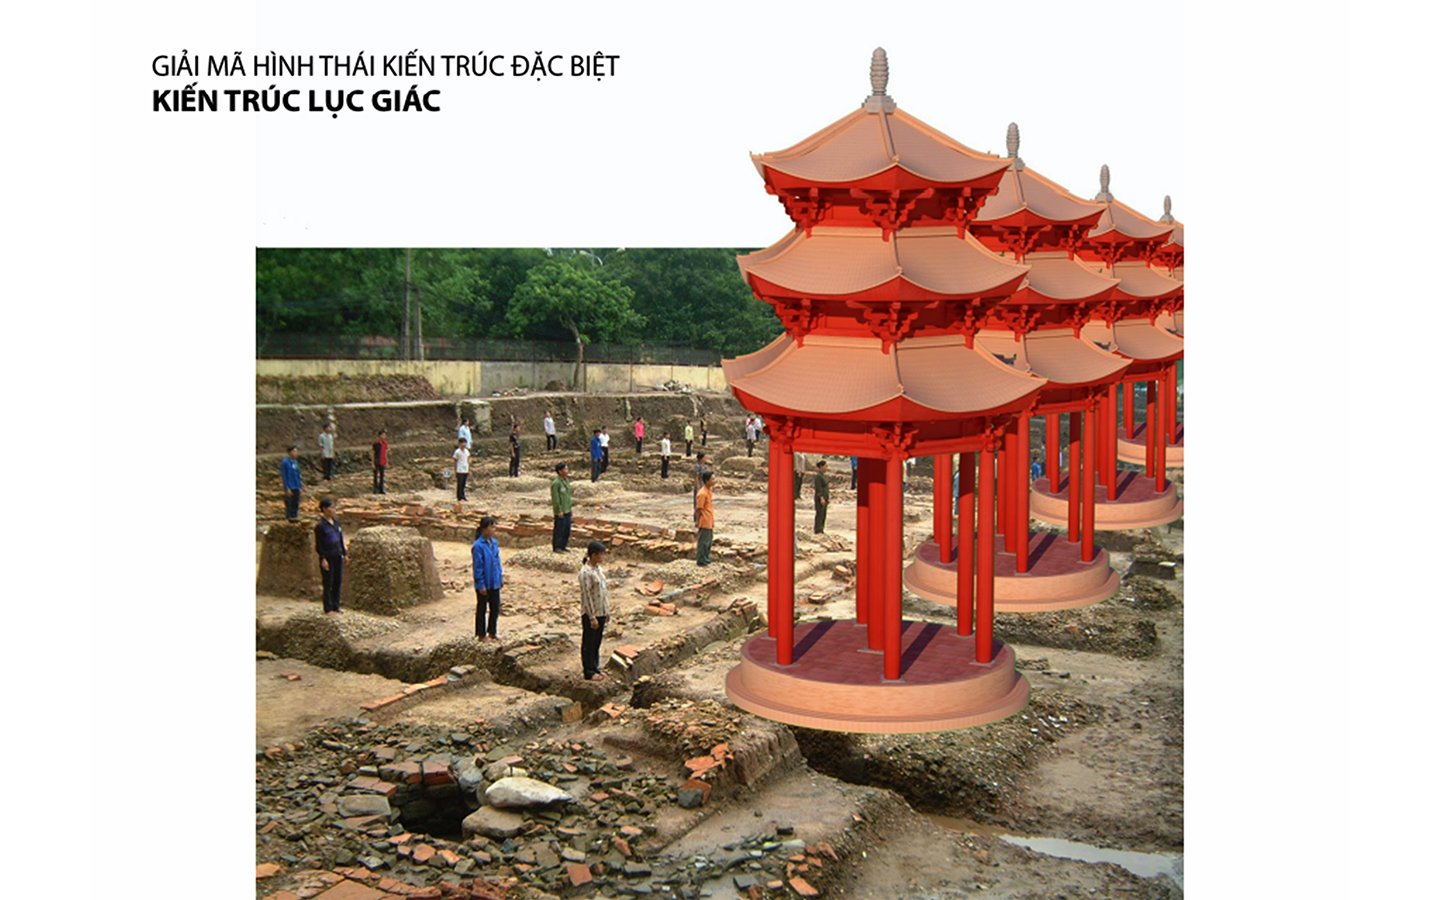 “Lầu son gác tía” Hoàng thành Thăng Long 1000 năm trước qua hình ảnh 3D - Ảnh 20.